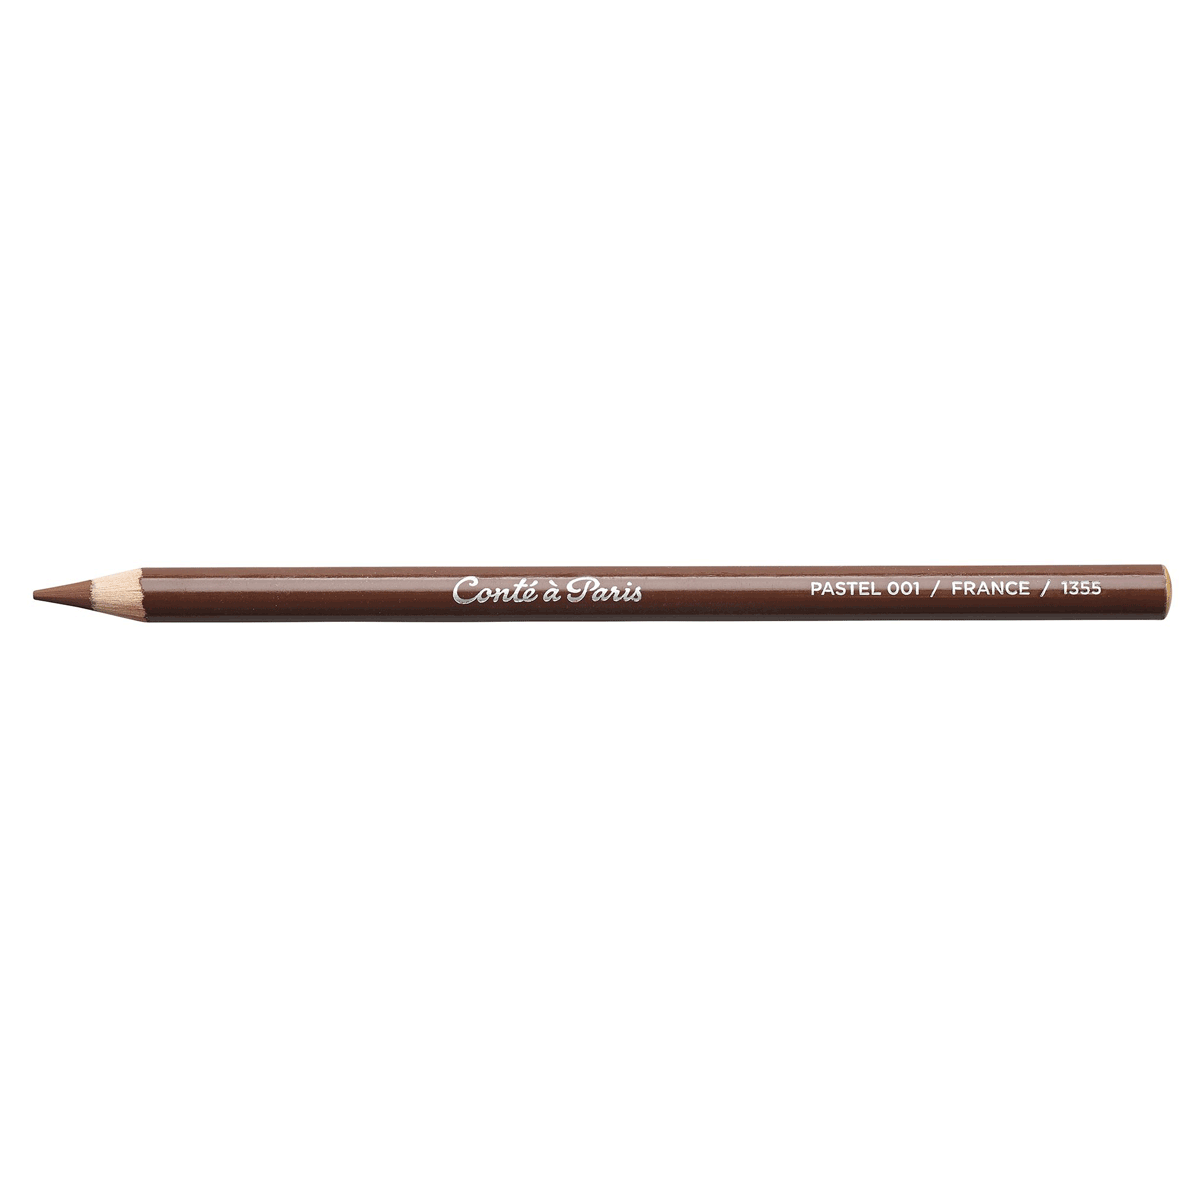 Conte Pastel Pencil - Bistre - 001